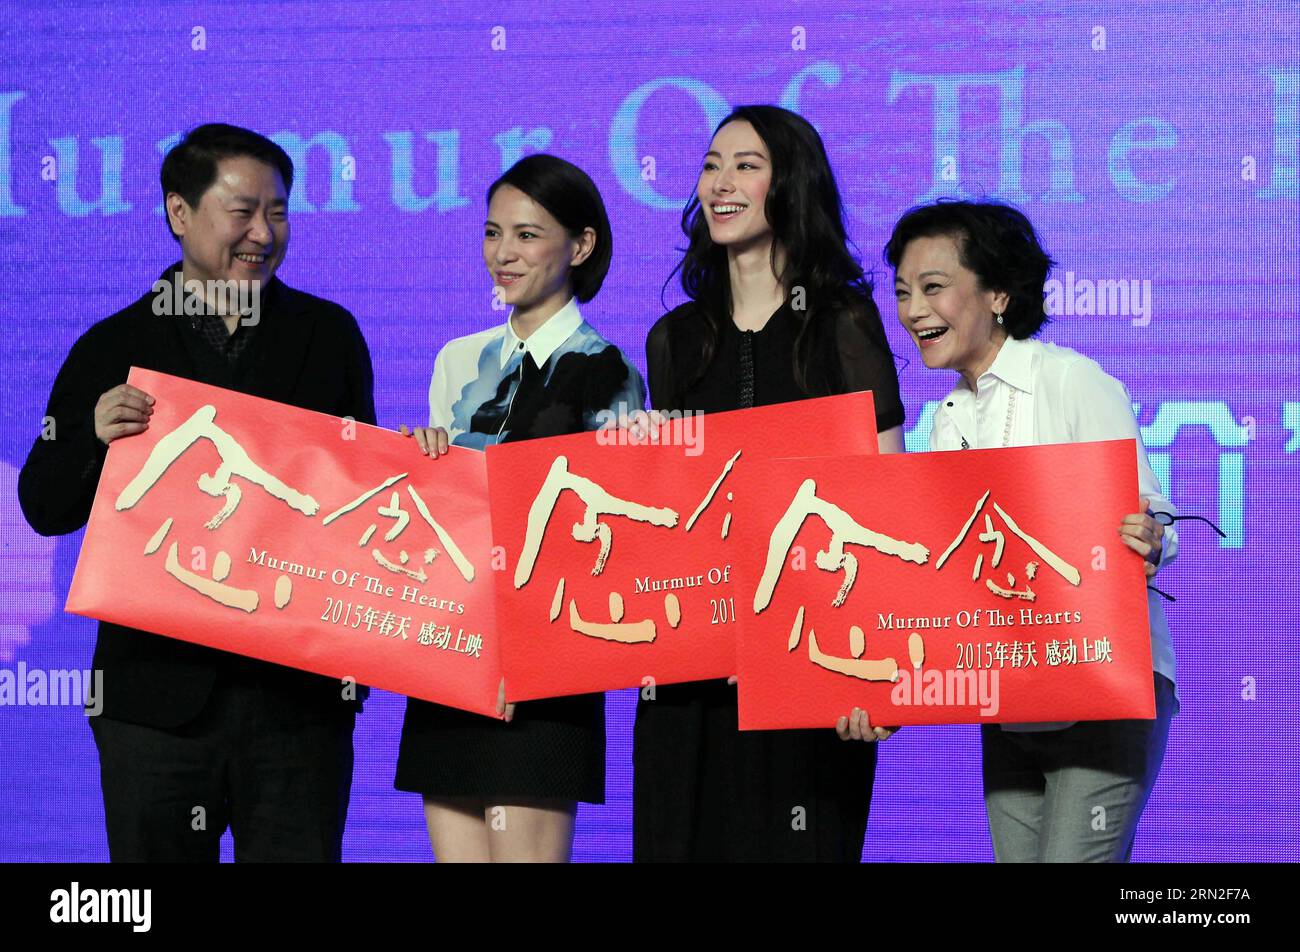 La réalisatrice taïwanaise Sylvia Chang (1e R), les acteurs Isabella Leong (2e R) et Lee Sinjie (2e L) assistent à une conférence de presse pour le film murmure of the Hearts à Pékin, capitale de la Chine, le 4 mars 2015. Murmur of the Hearts ouvrira cette année le Festival international du film de Hong Kong (HKIFF, 23 mars-6 avril). (Wyo) CHINA-BEIJING-FILM-MURMURE OF THE HEARTS (CN) GaoxJing PUBLICATIONxNOTxINxCHN réalisatrice taïwanaise Sylvia Chang 1e r Cast Members Isabella Leong 2e r et Lee 2e l assistent à une conférence de presse pour le film murmure of the Hearts à Beijing capitale de la Chine Mars 4 2015 Banque D'Images